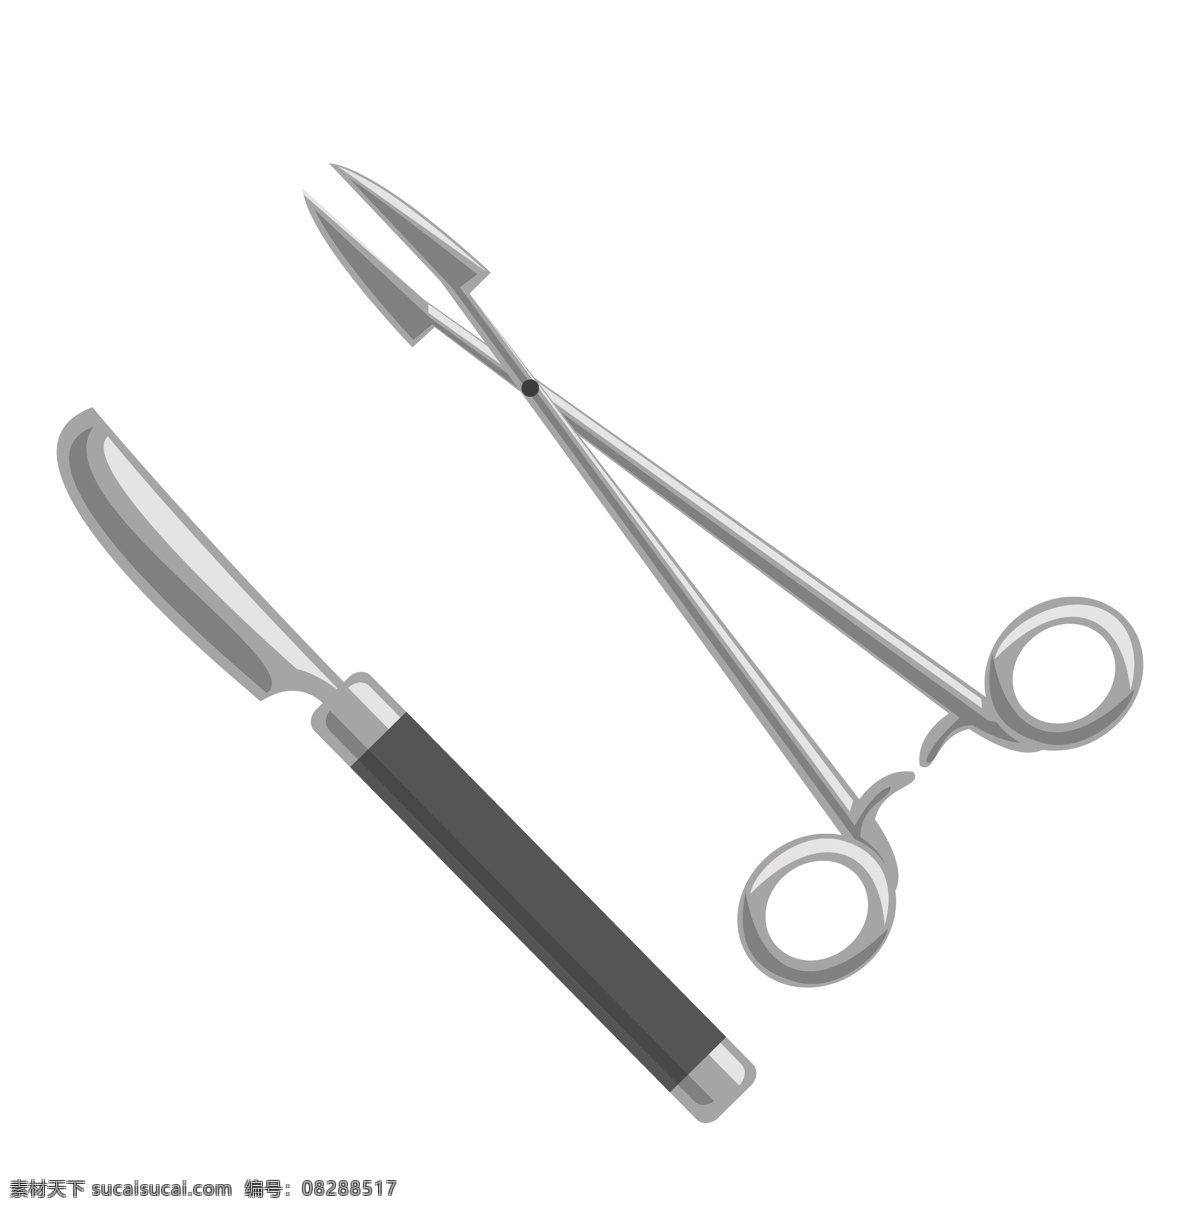 医疗用品 手术 用品 医疗 手术刀 剪刀